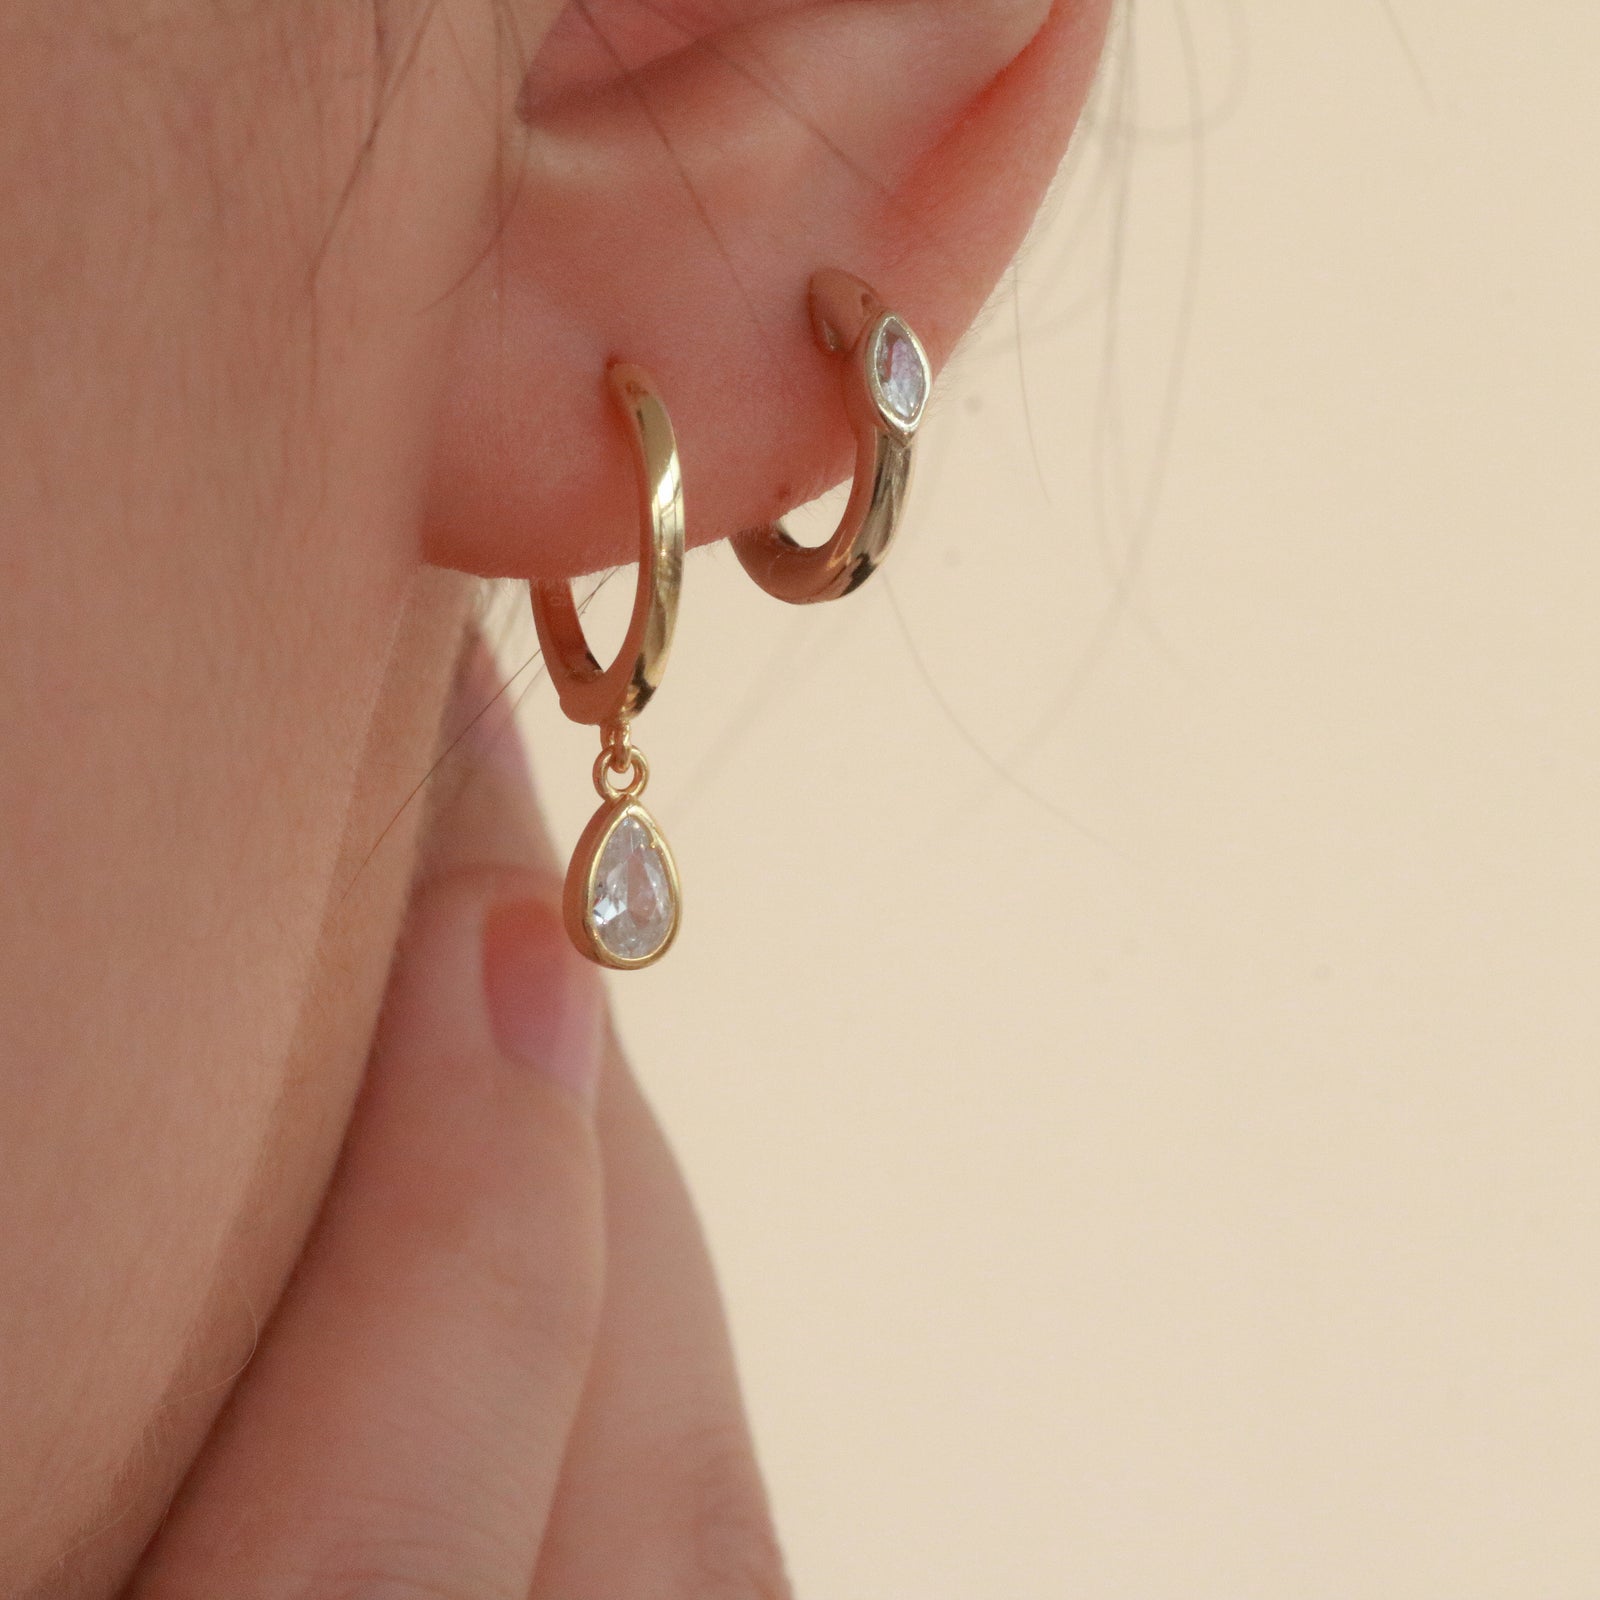 Small hoop earrings in 14k gold vermeil